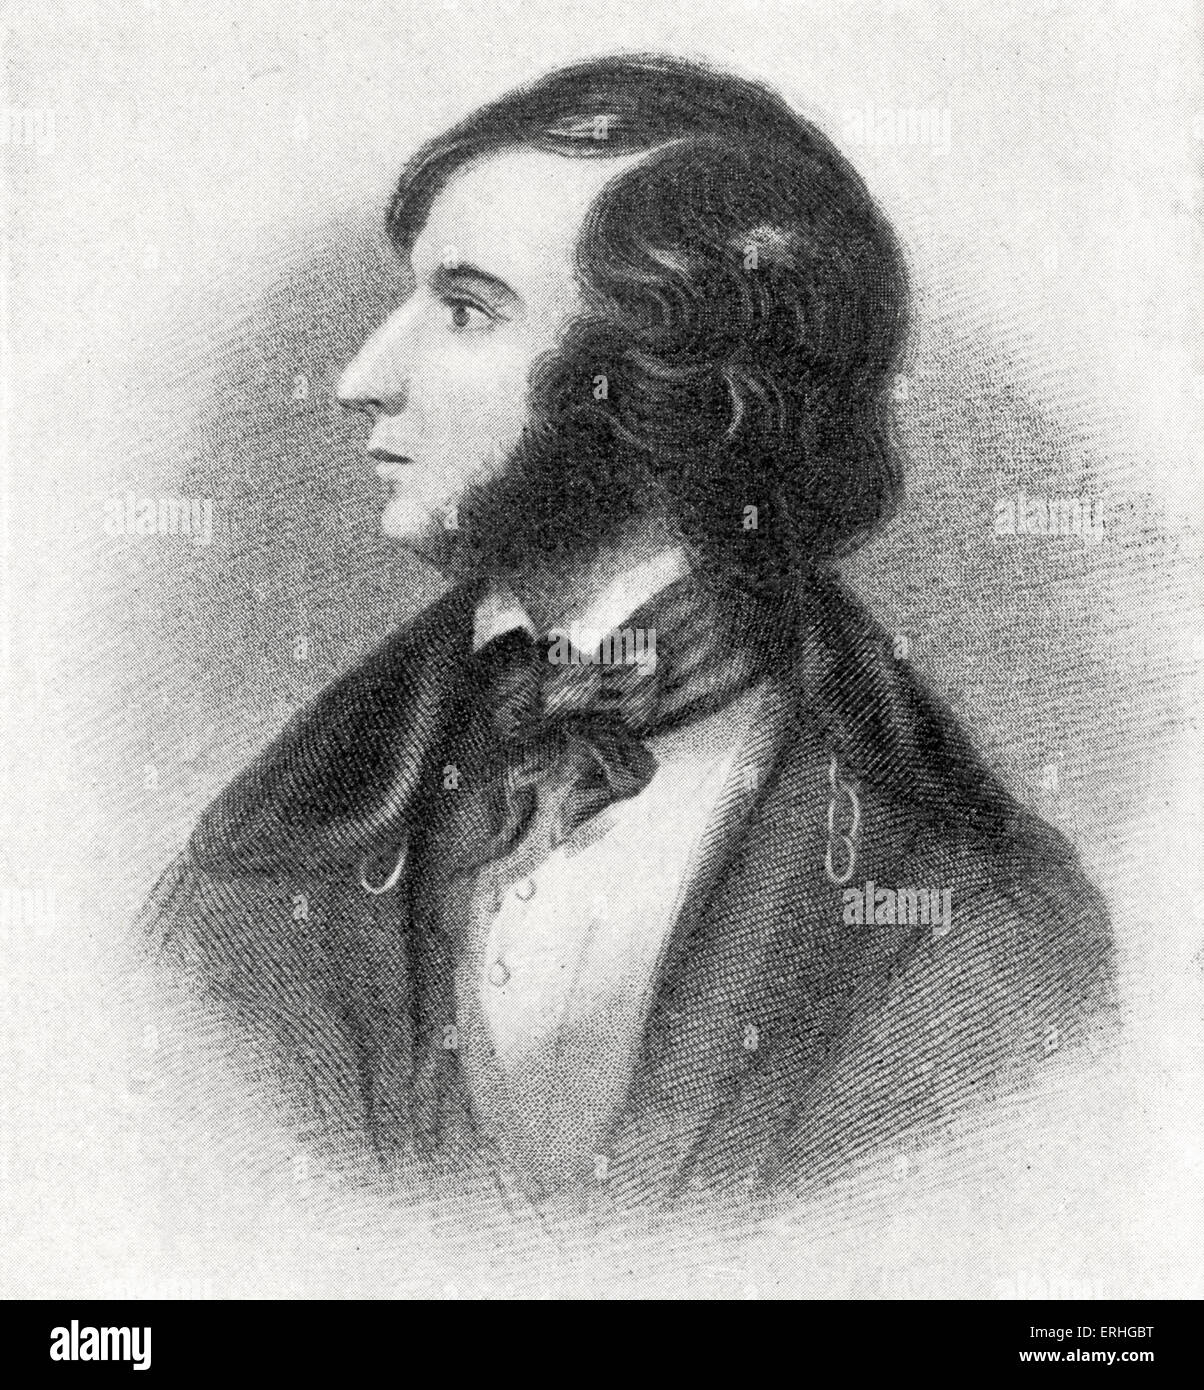 Robert Browning - Inglese poeta e drammaturgo, 1835: 7 maggio 1812 - 12 dicembre 1889. Foto Stock